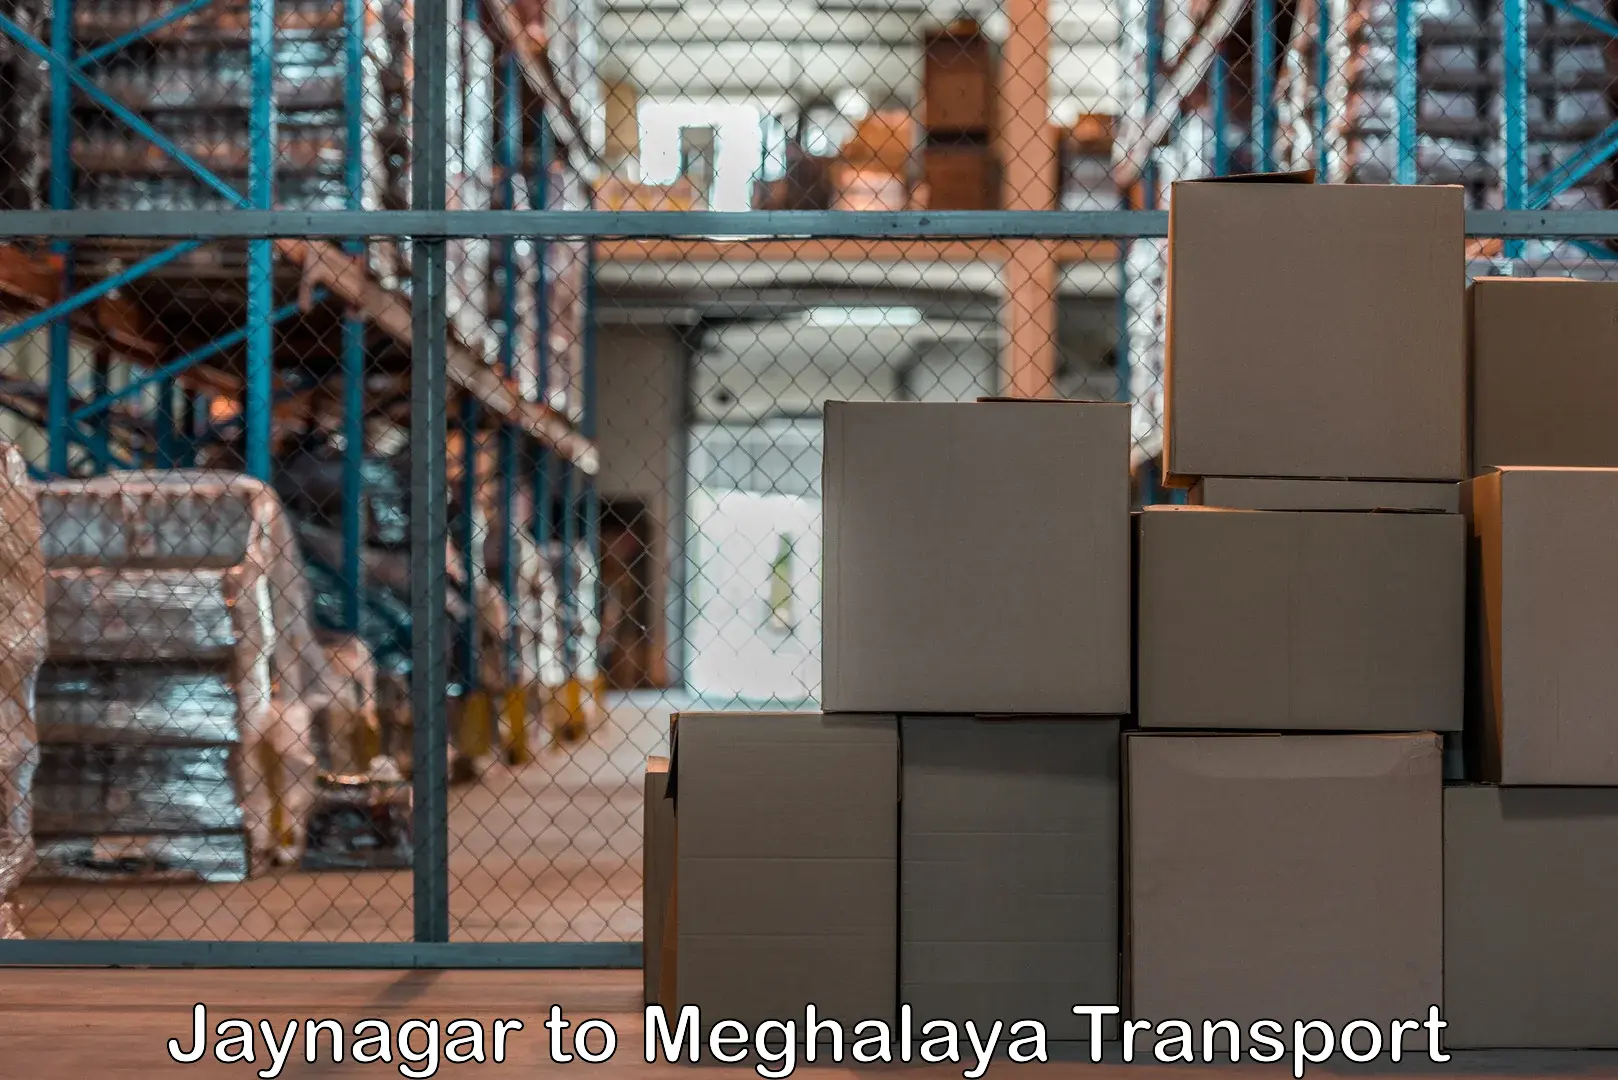 Air cargo transport services in Jaynagar to Meghalaya